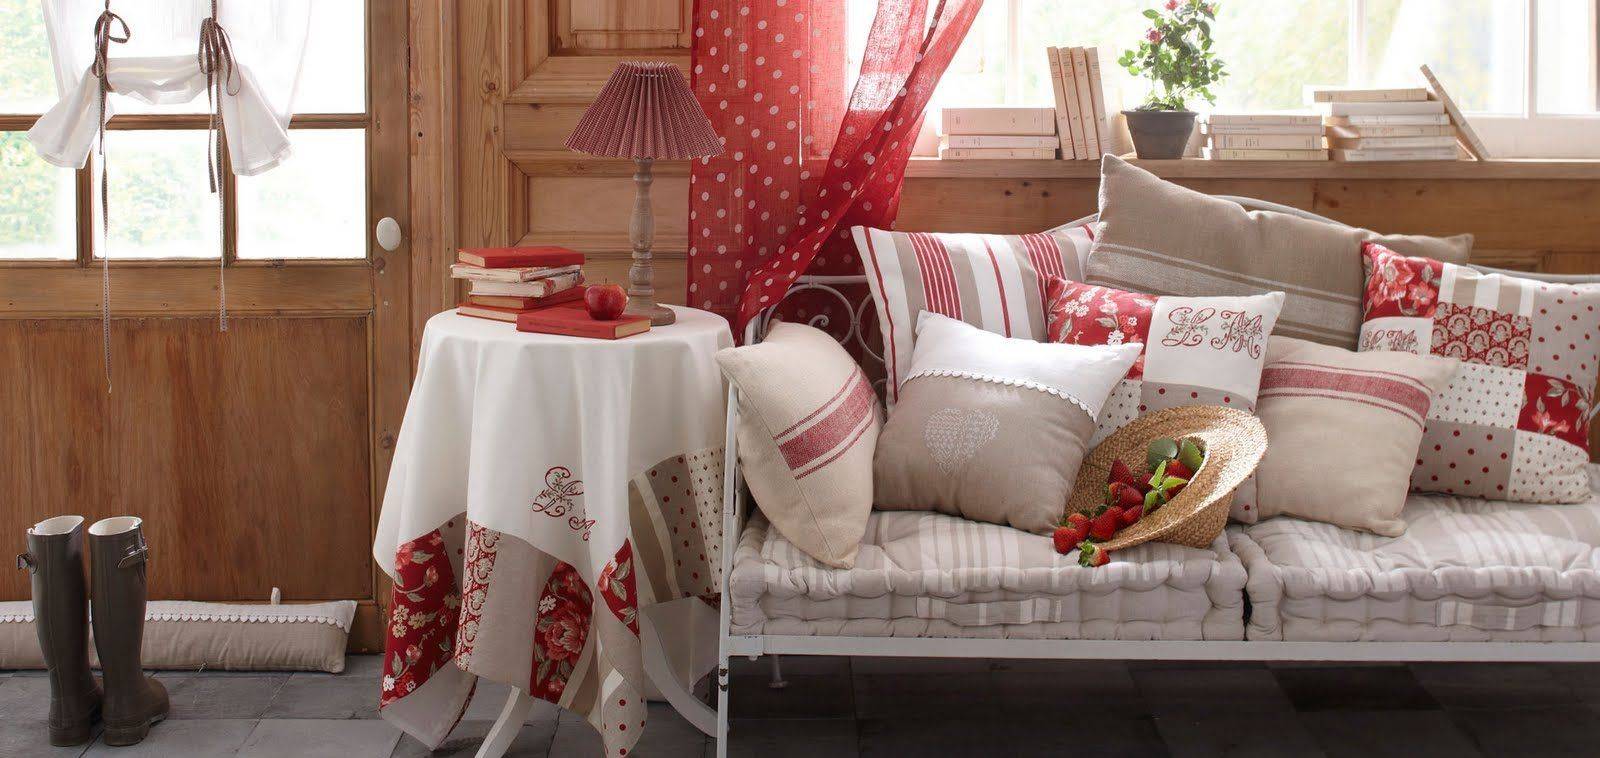 Текстиль в стиле прованс: шторы, подушки, скатерти и занавески в одном стиле